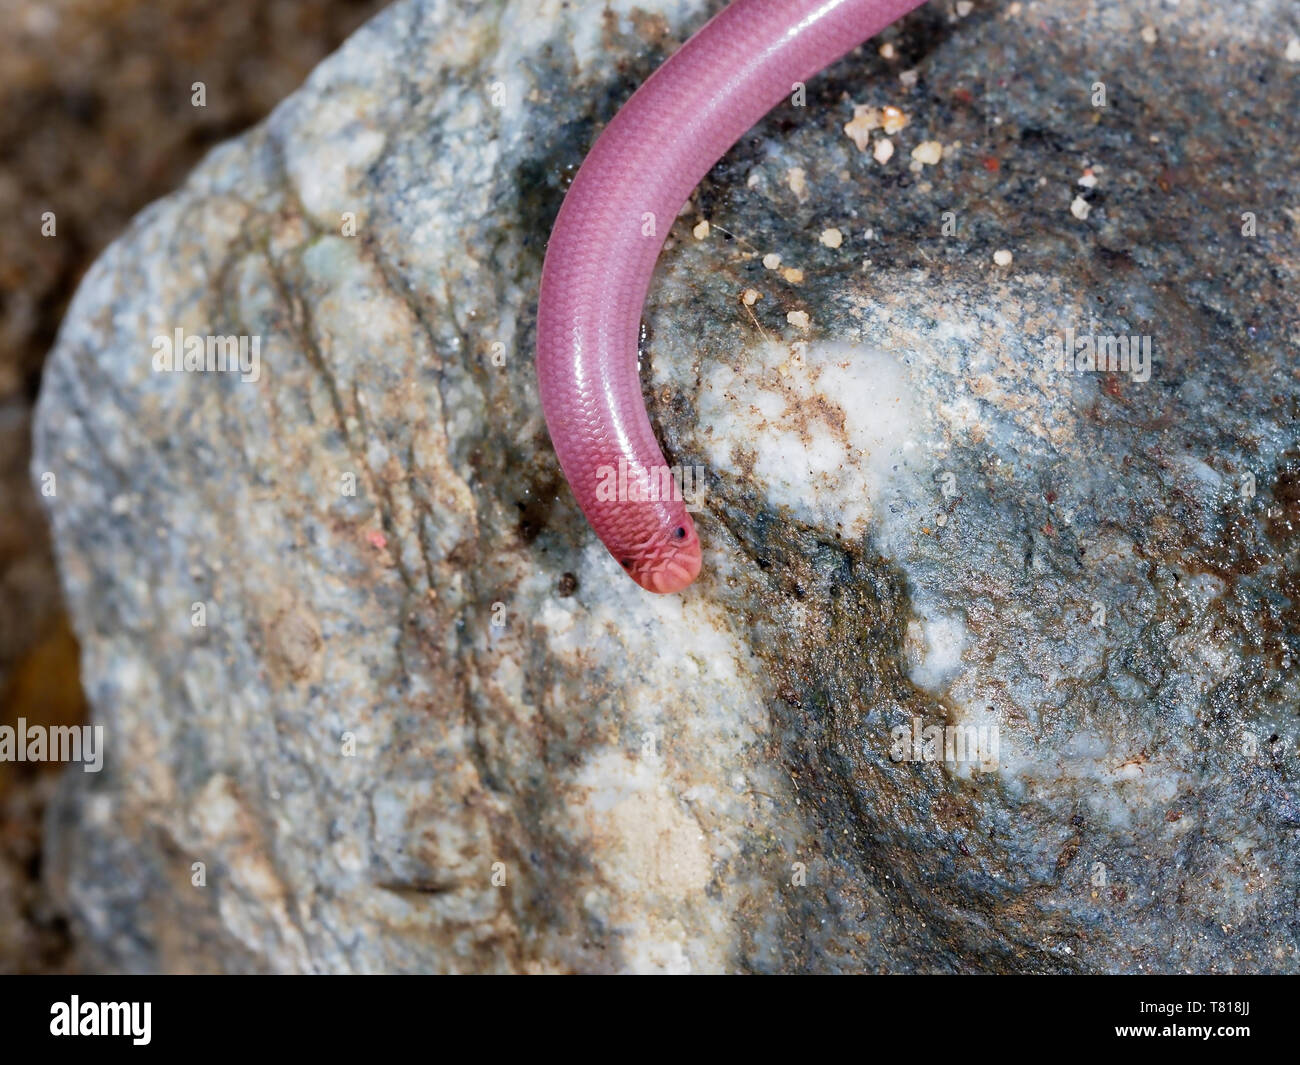 Europäische Wurm Schlange oder blinde Schlange, Typhlops vermicularis, Bulgarien, April 2019 Stockfoto